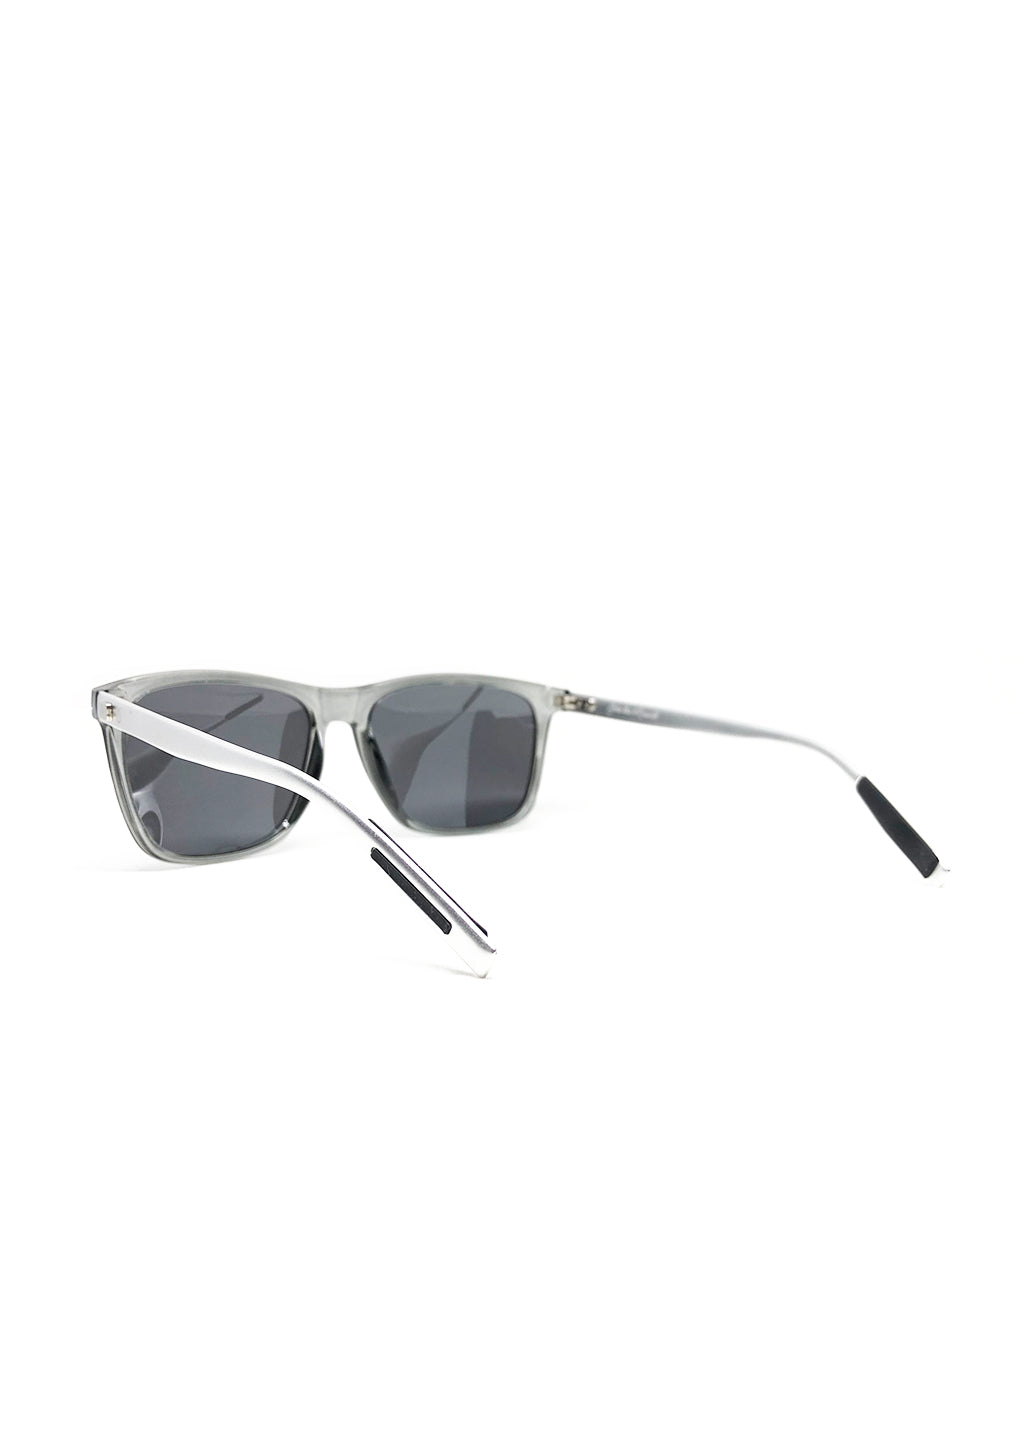 Soho Wayfarer sunglasses - Details